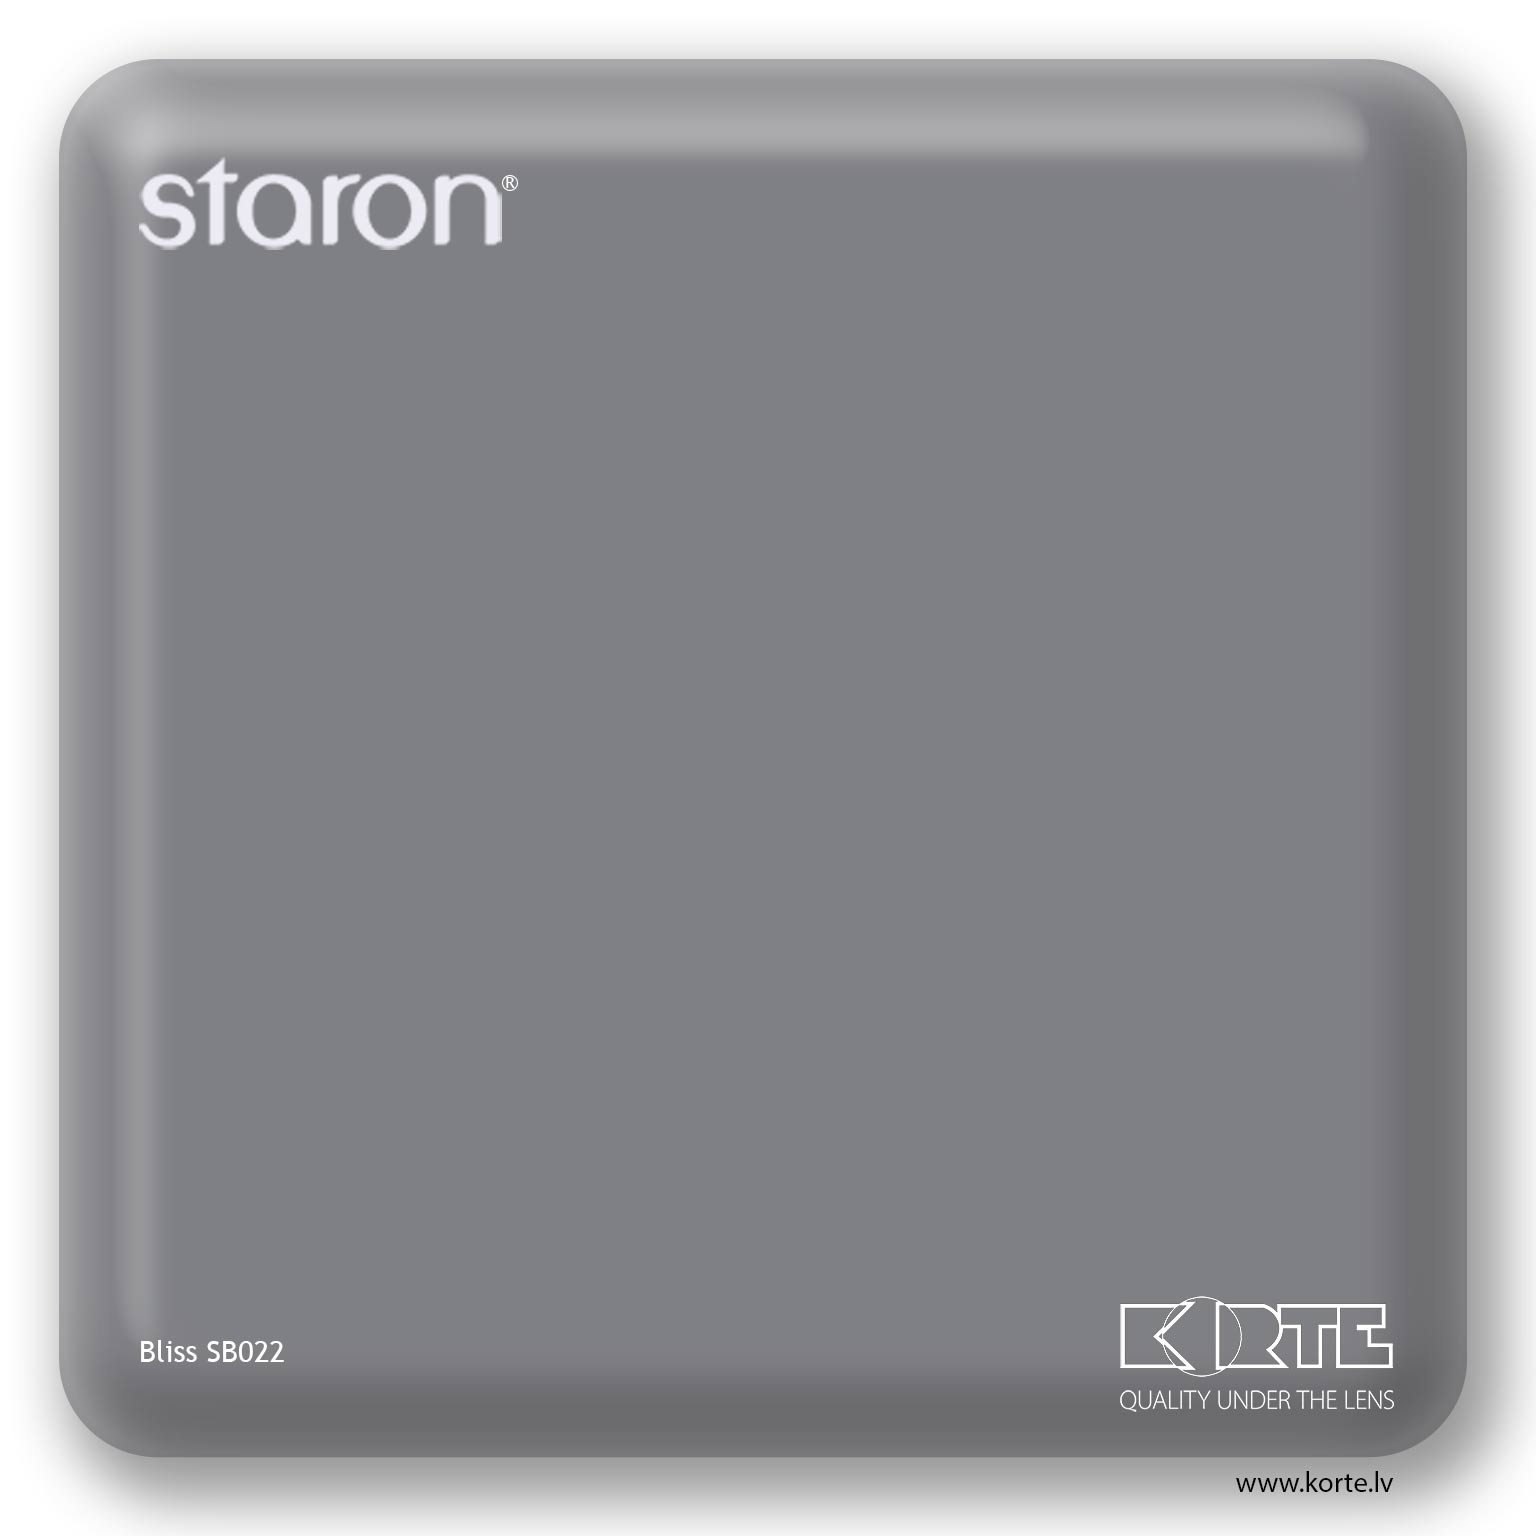 Staron Bliss SB022